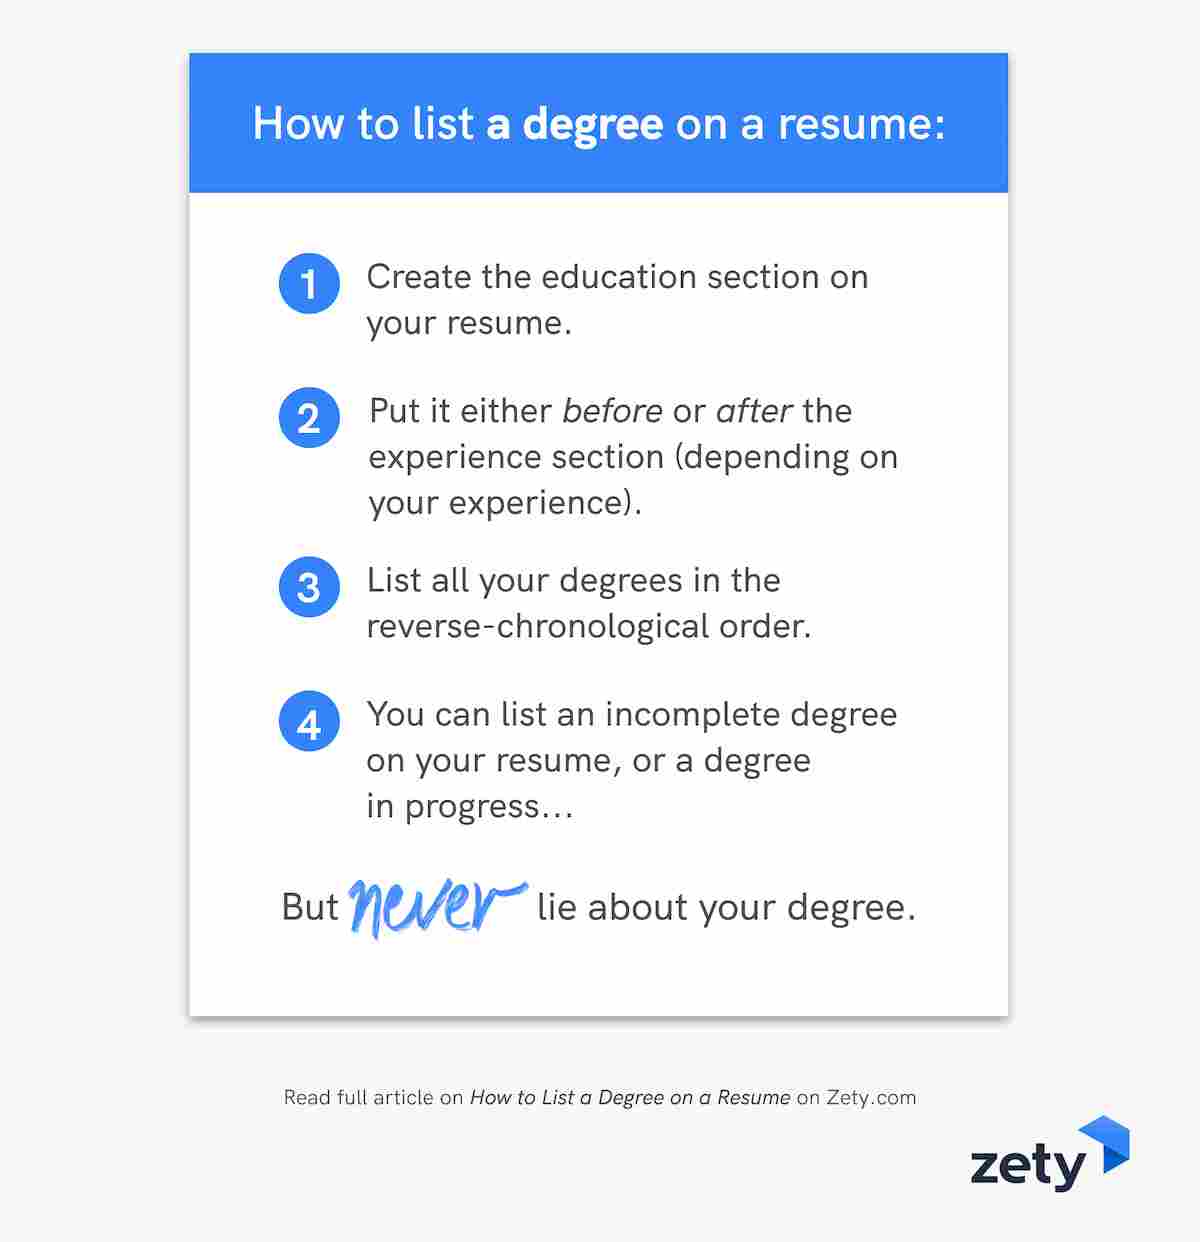 How To List A Degree On A Resume (Associate, Bachelor'S, Ma)